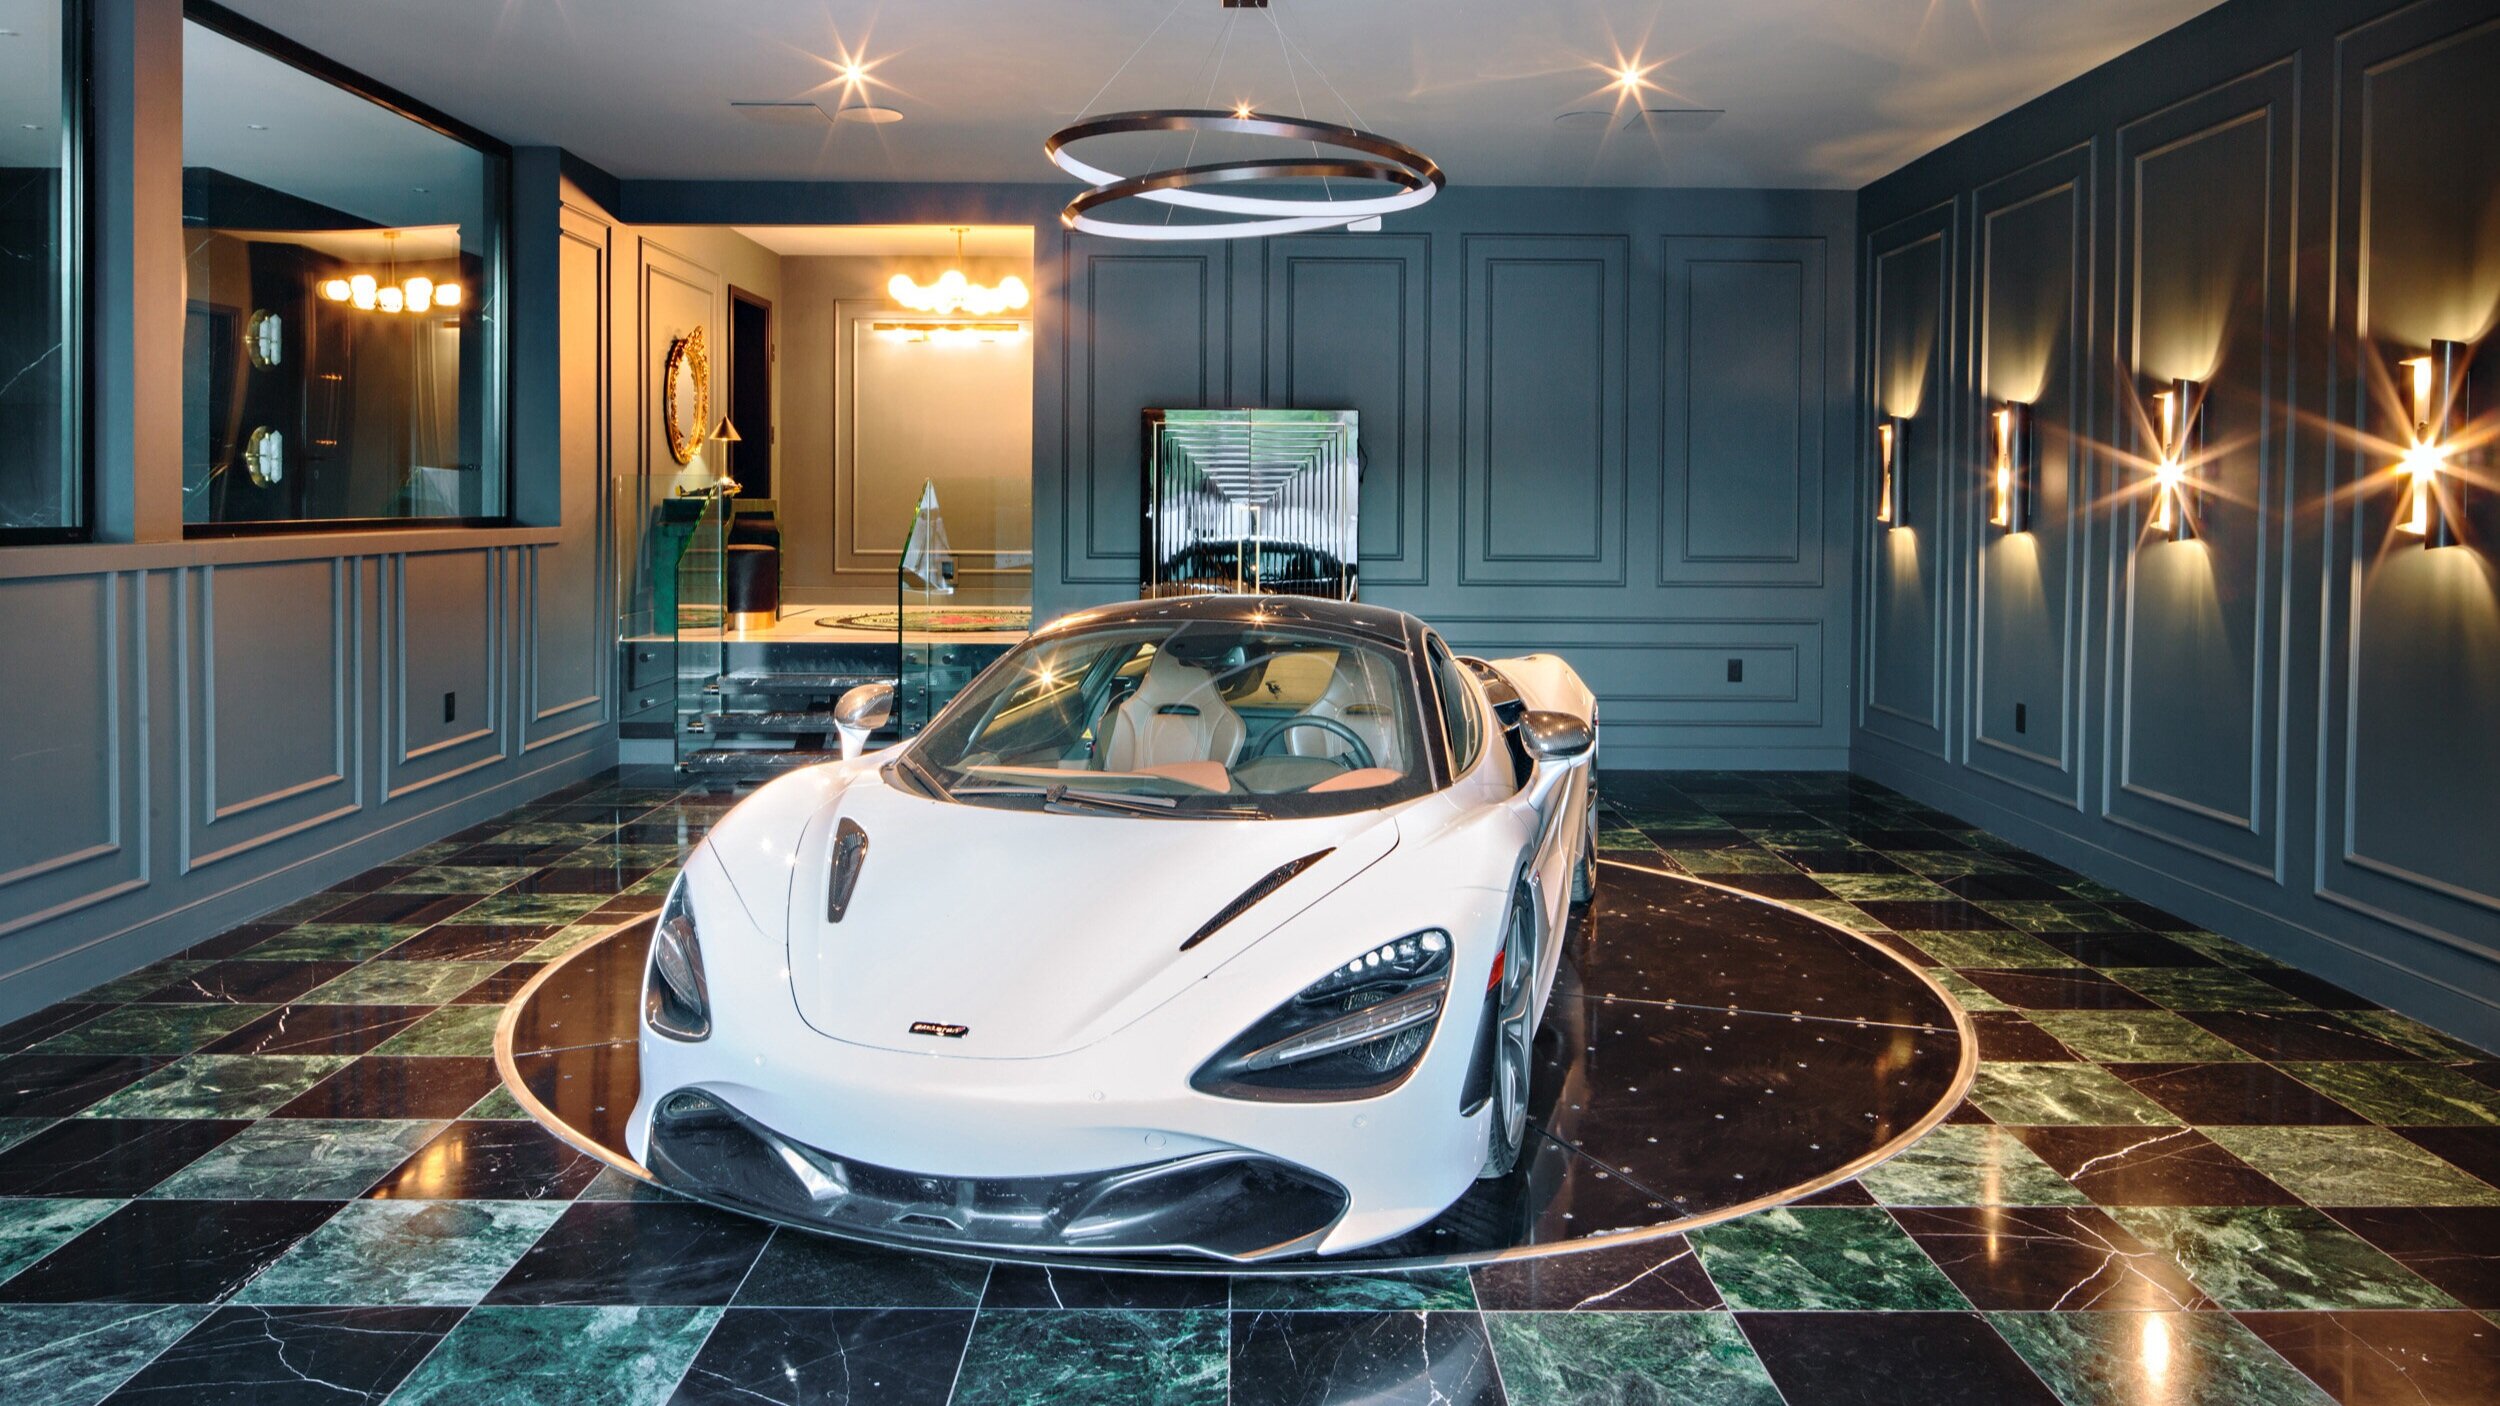 luxury+marble+garage+design+with+McLaren+designed+by+Chrissy+Cottrell+.jpg